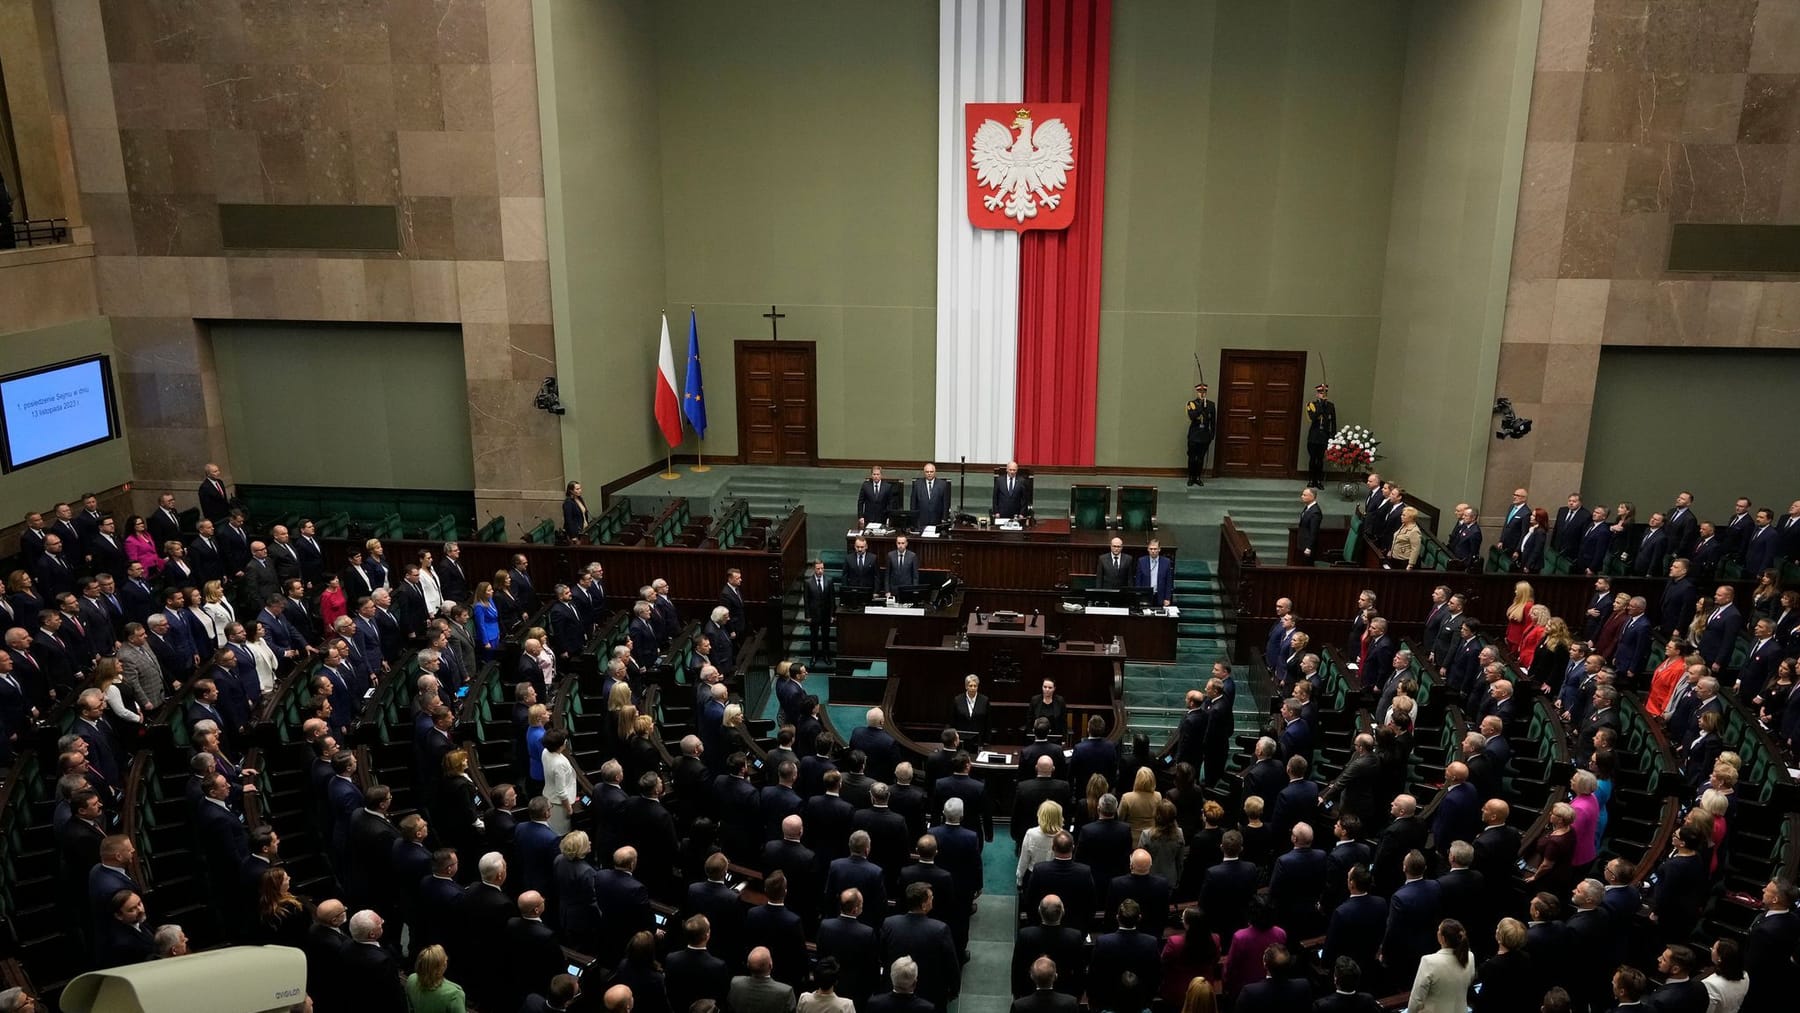 Polski parlament chce przywrócić praworządność